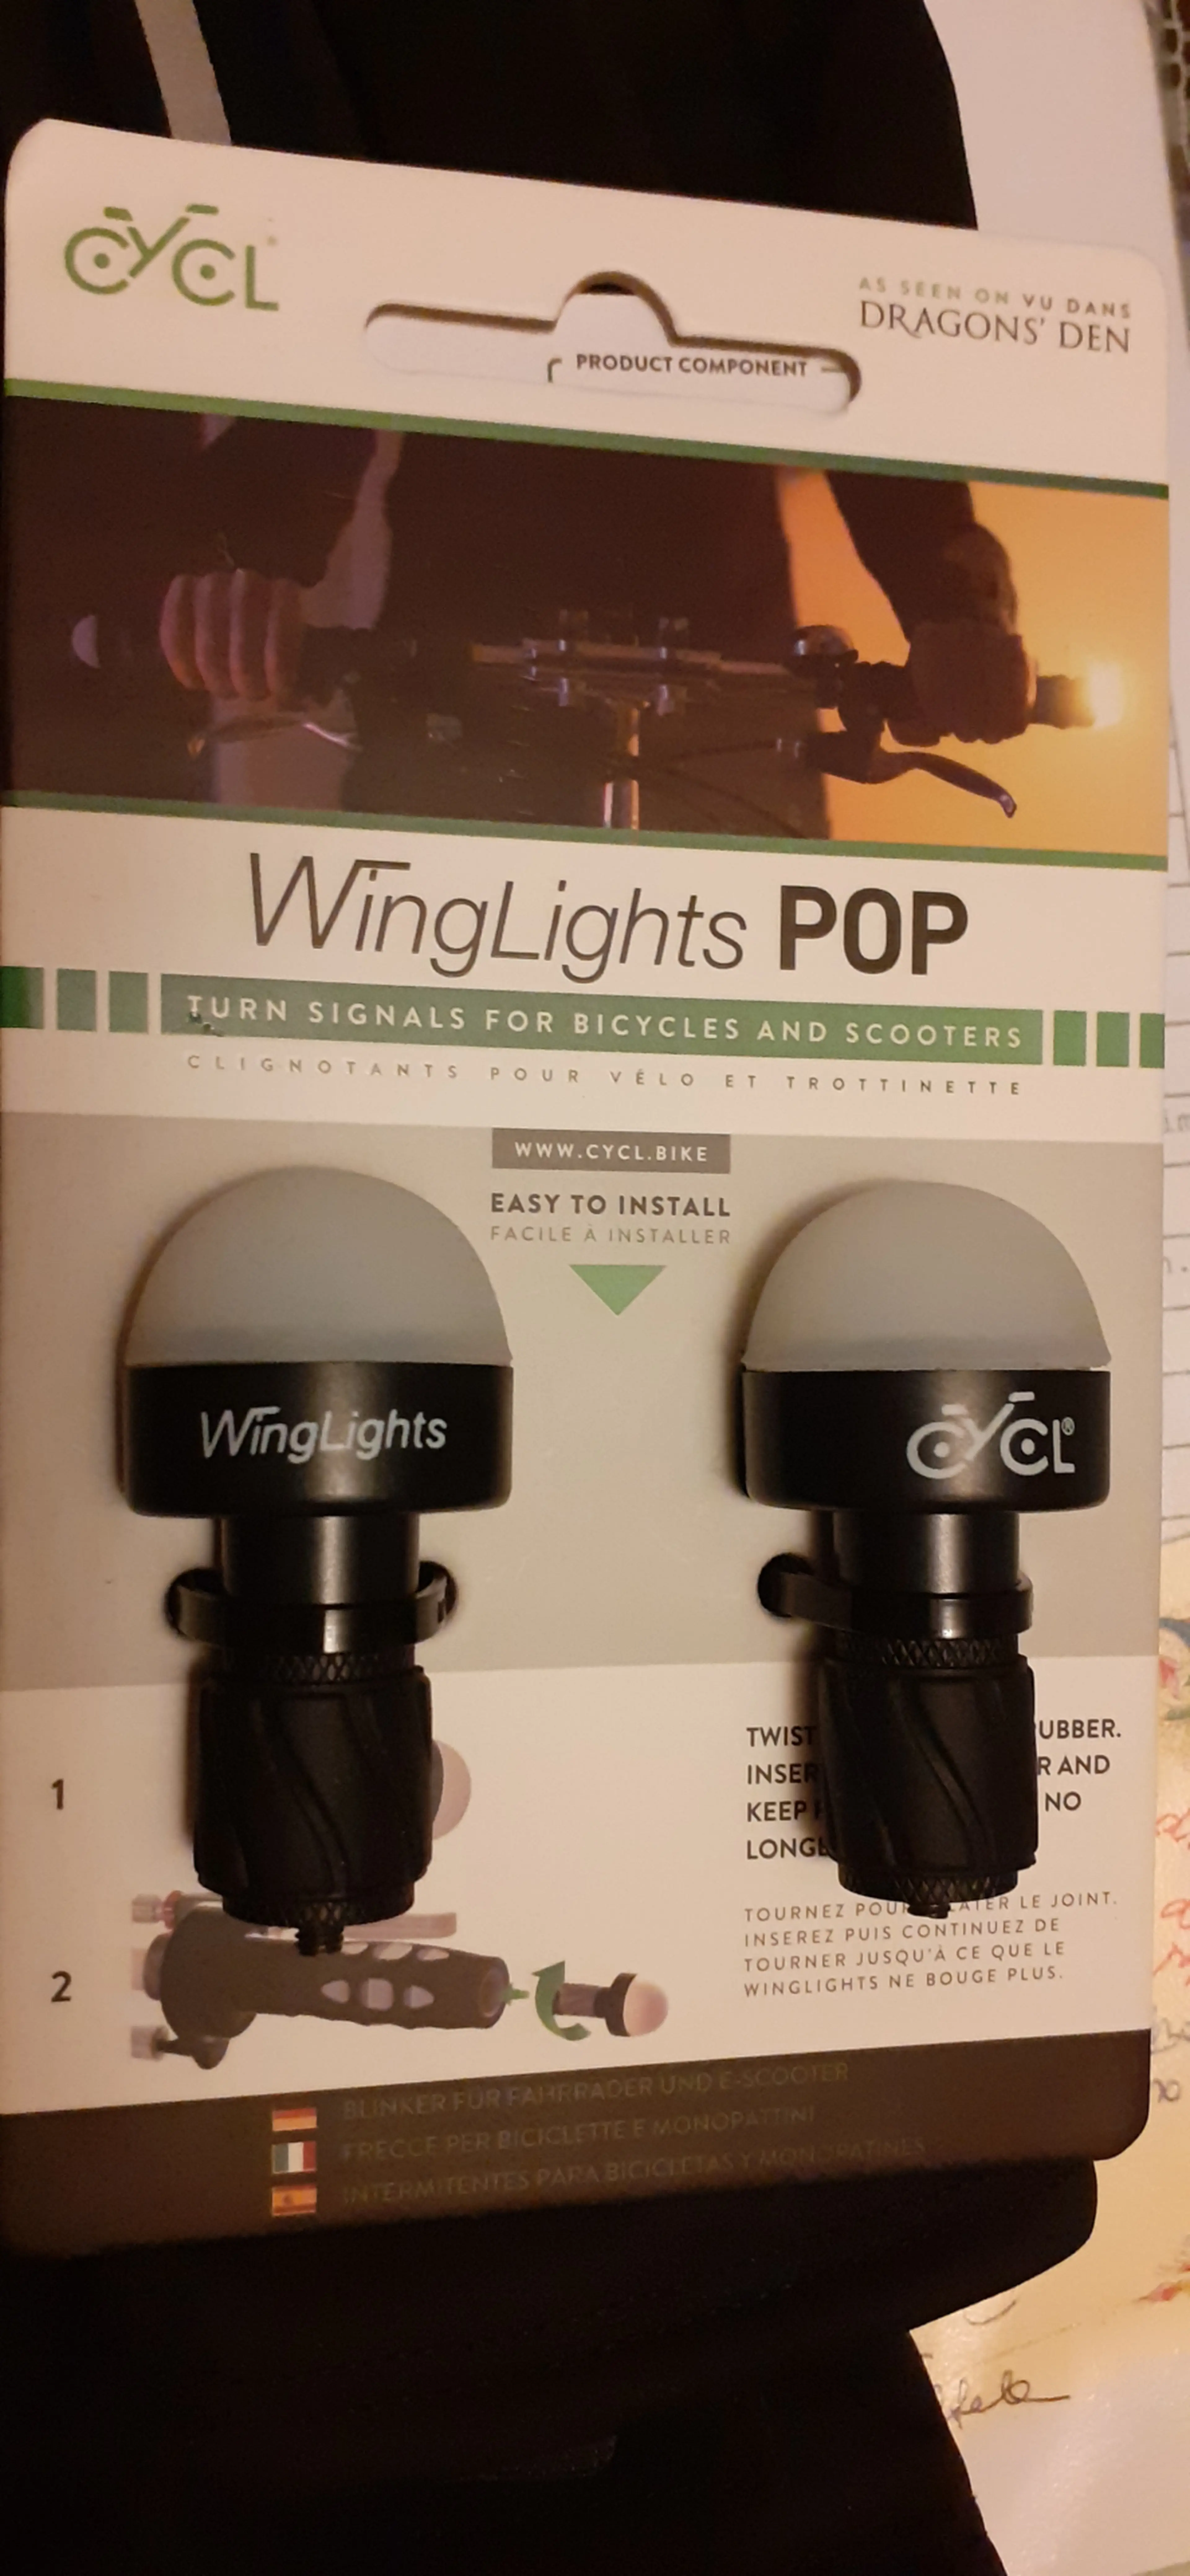 1. Semnalizatoare ghidon "Cycl WingLights POP"